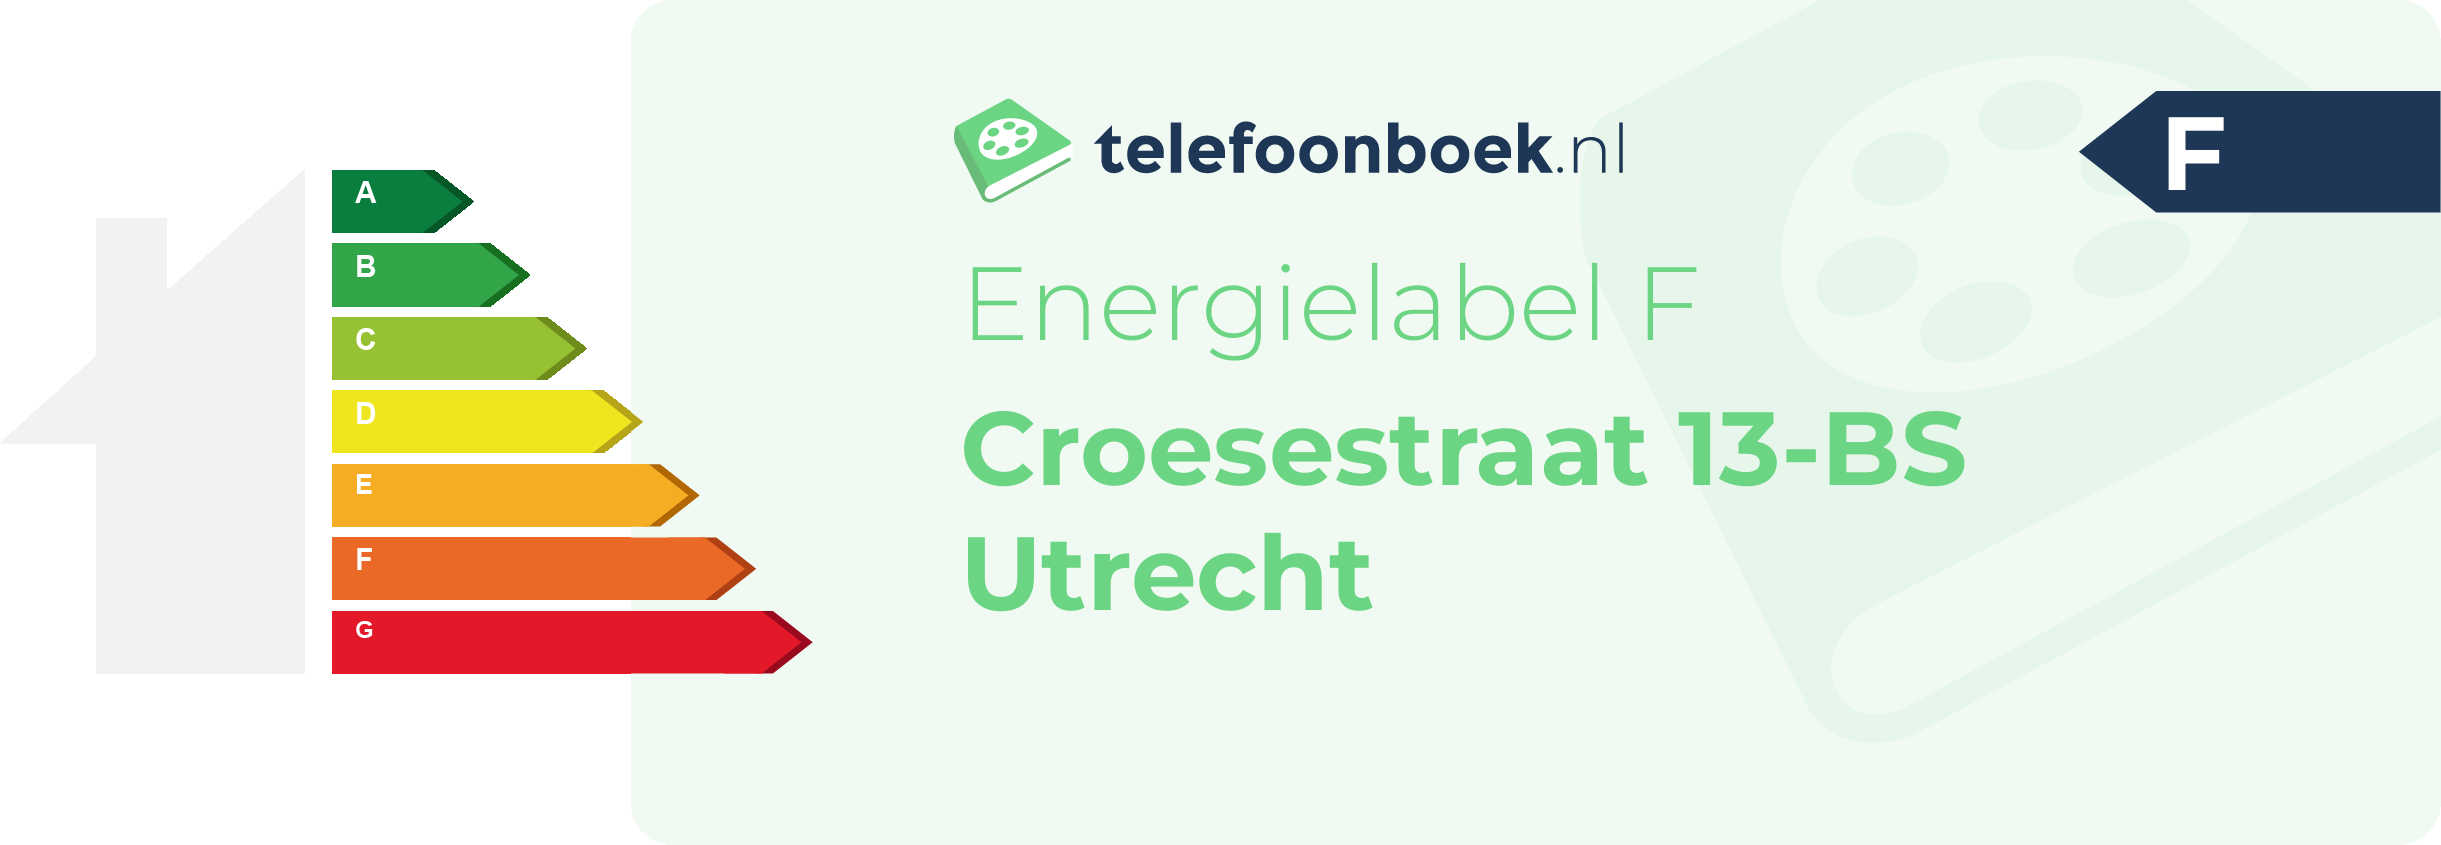 Energielabel Croesestraat 13-BS Utrecht